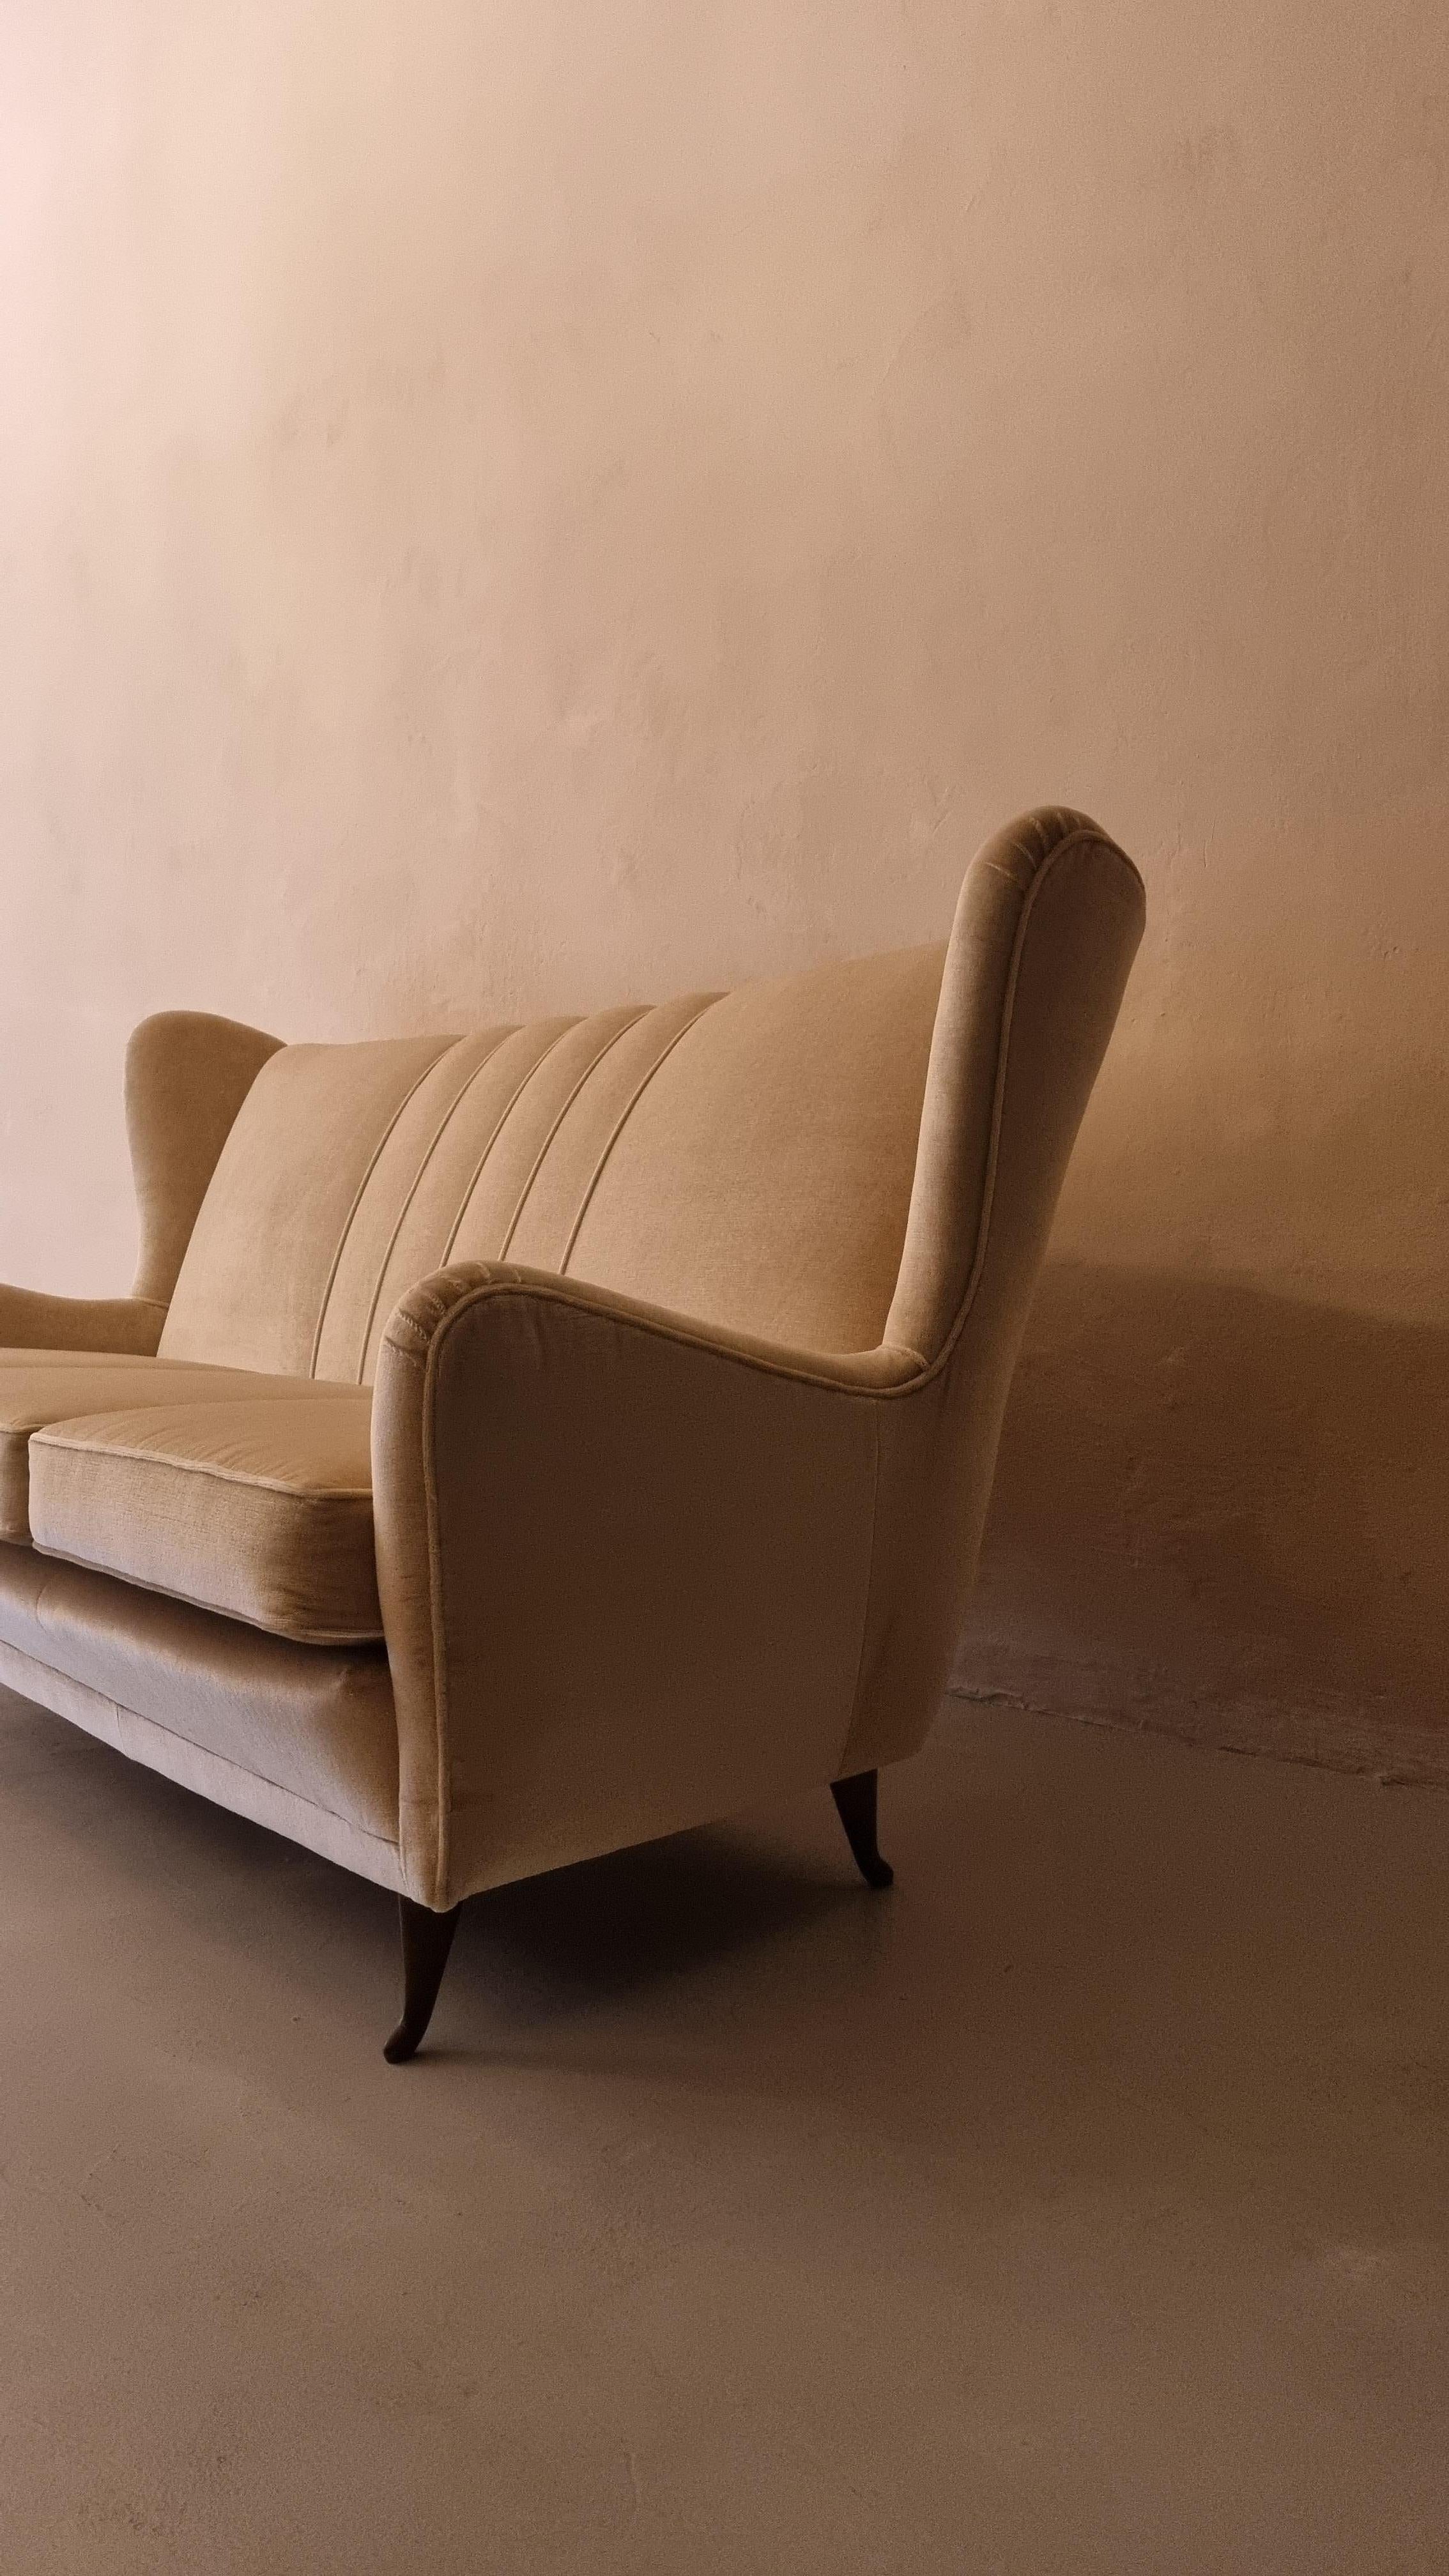 Canapé 3 places en velours de production Isa Begamo, 1950, restauré en velours beige, pieds en laiton.
Il reste des œuvres d'ISA Bergamo : des miroirs, des fauteuils et de nombreux accessoires d'ameublement qui ont conquis même un maître comme Giò